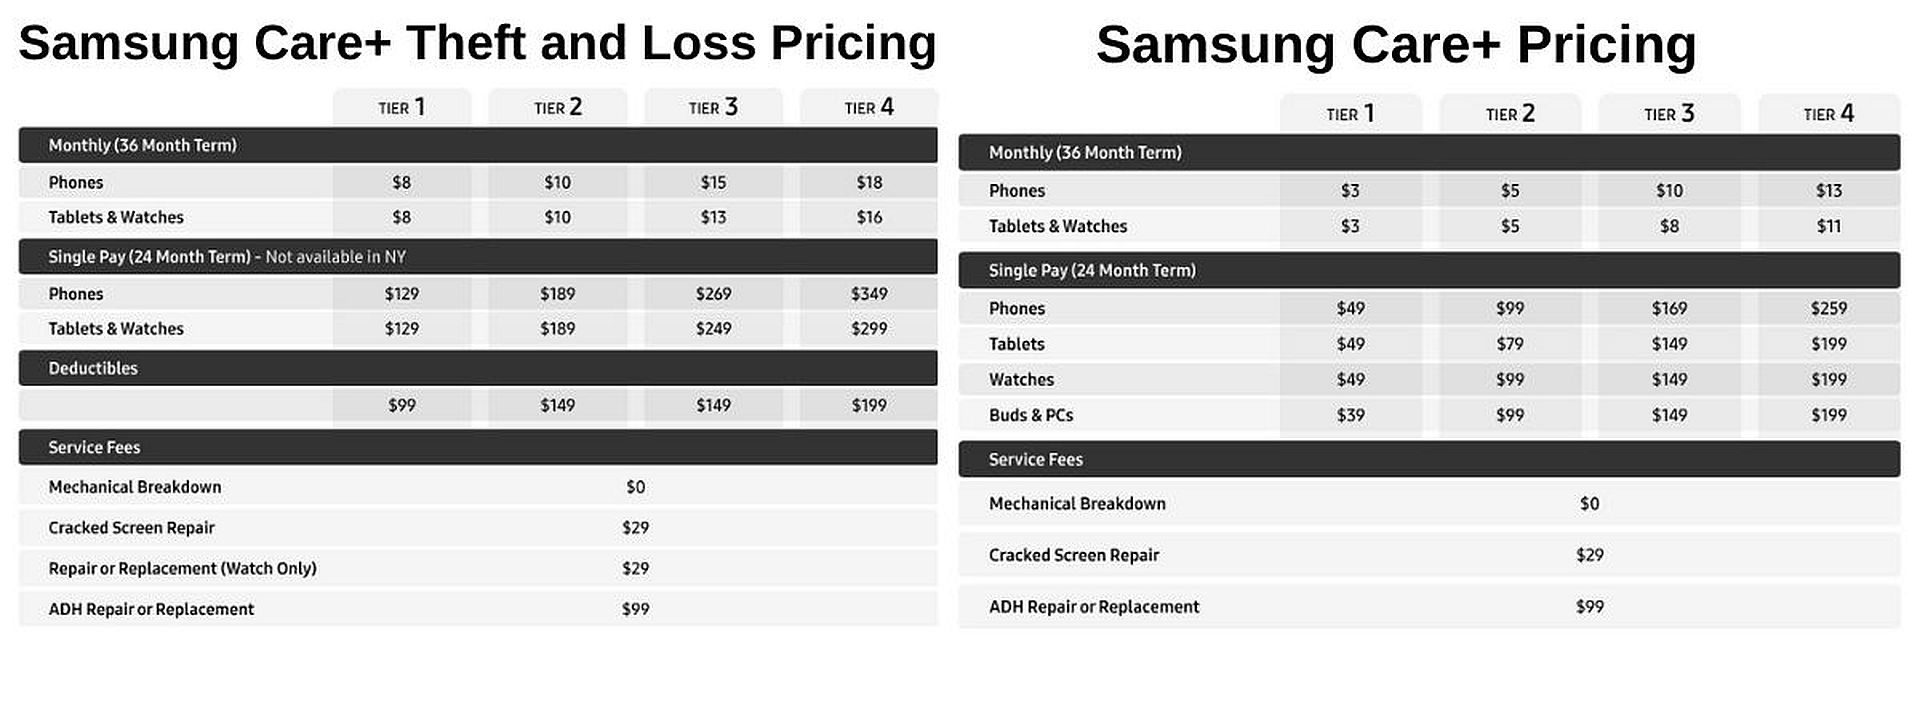 Samsung теперь хочет больше денег "Забота" ваши устройства